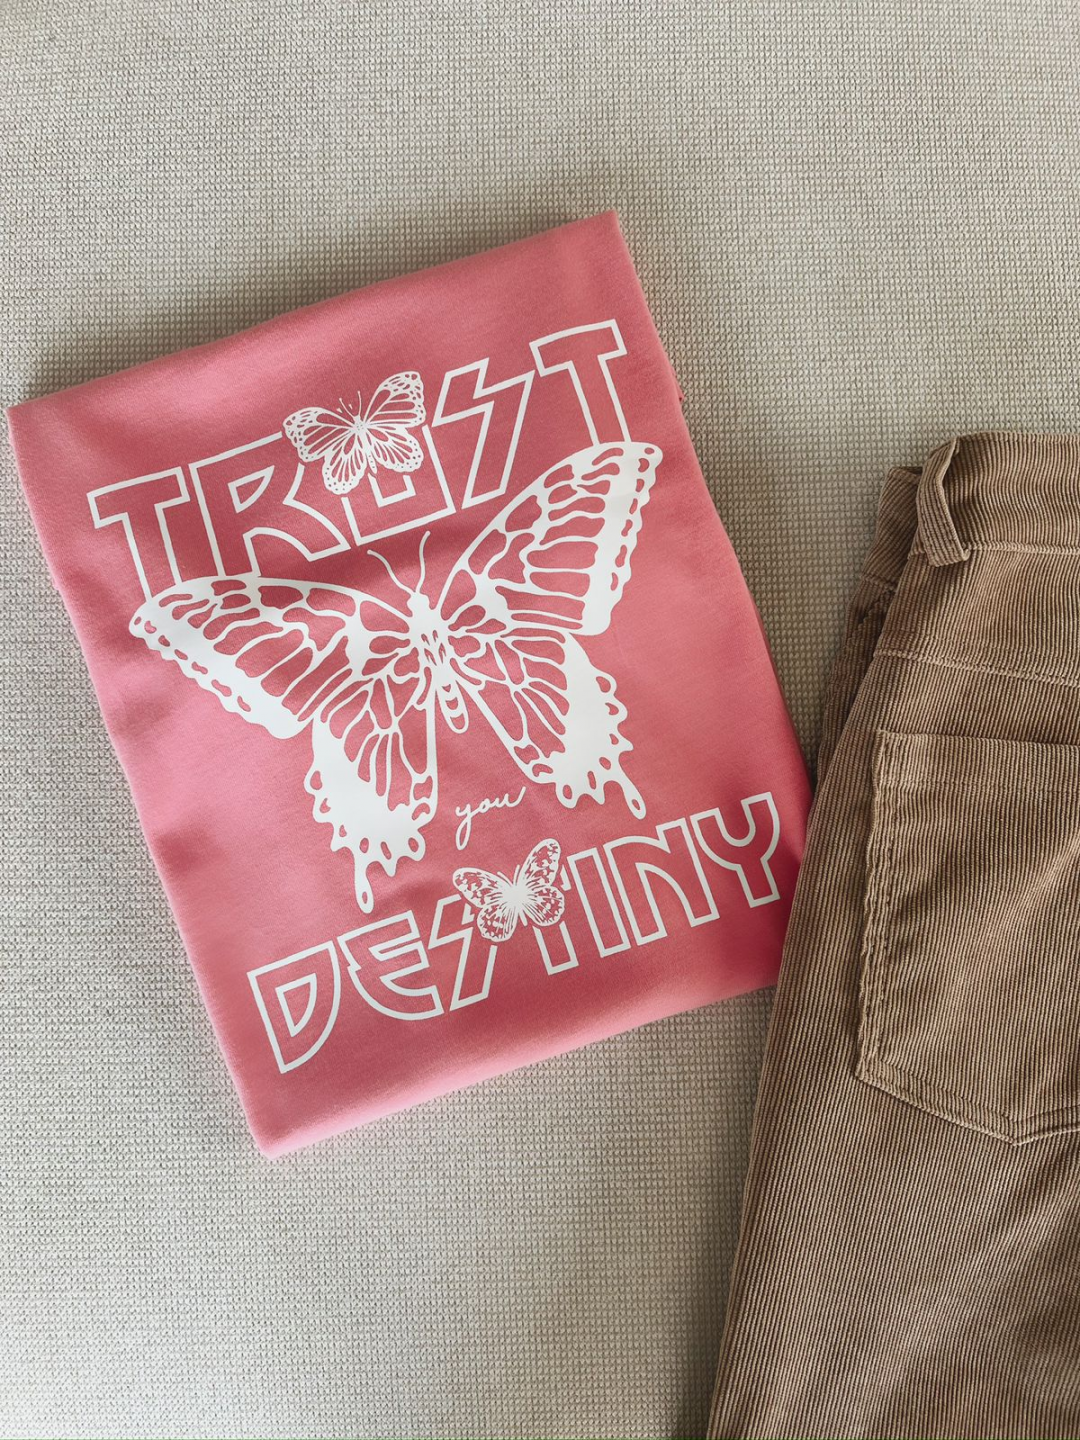 Camiseta Mariposa trust